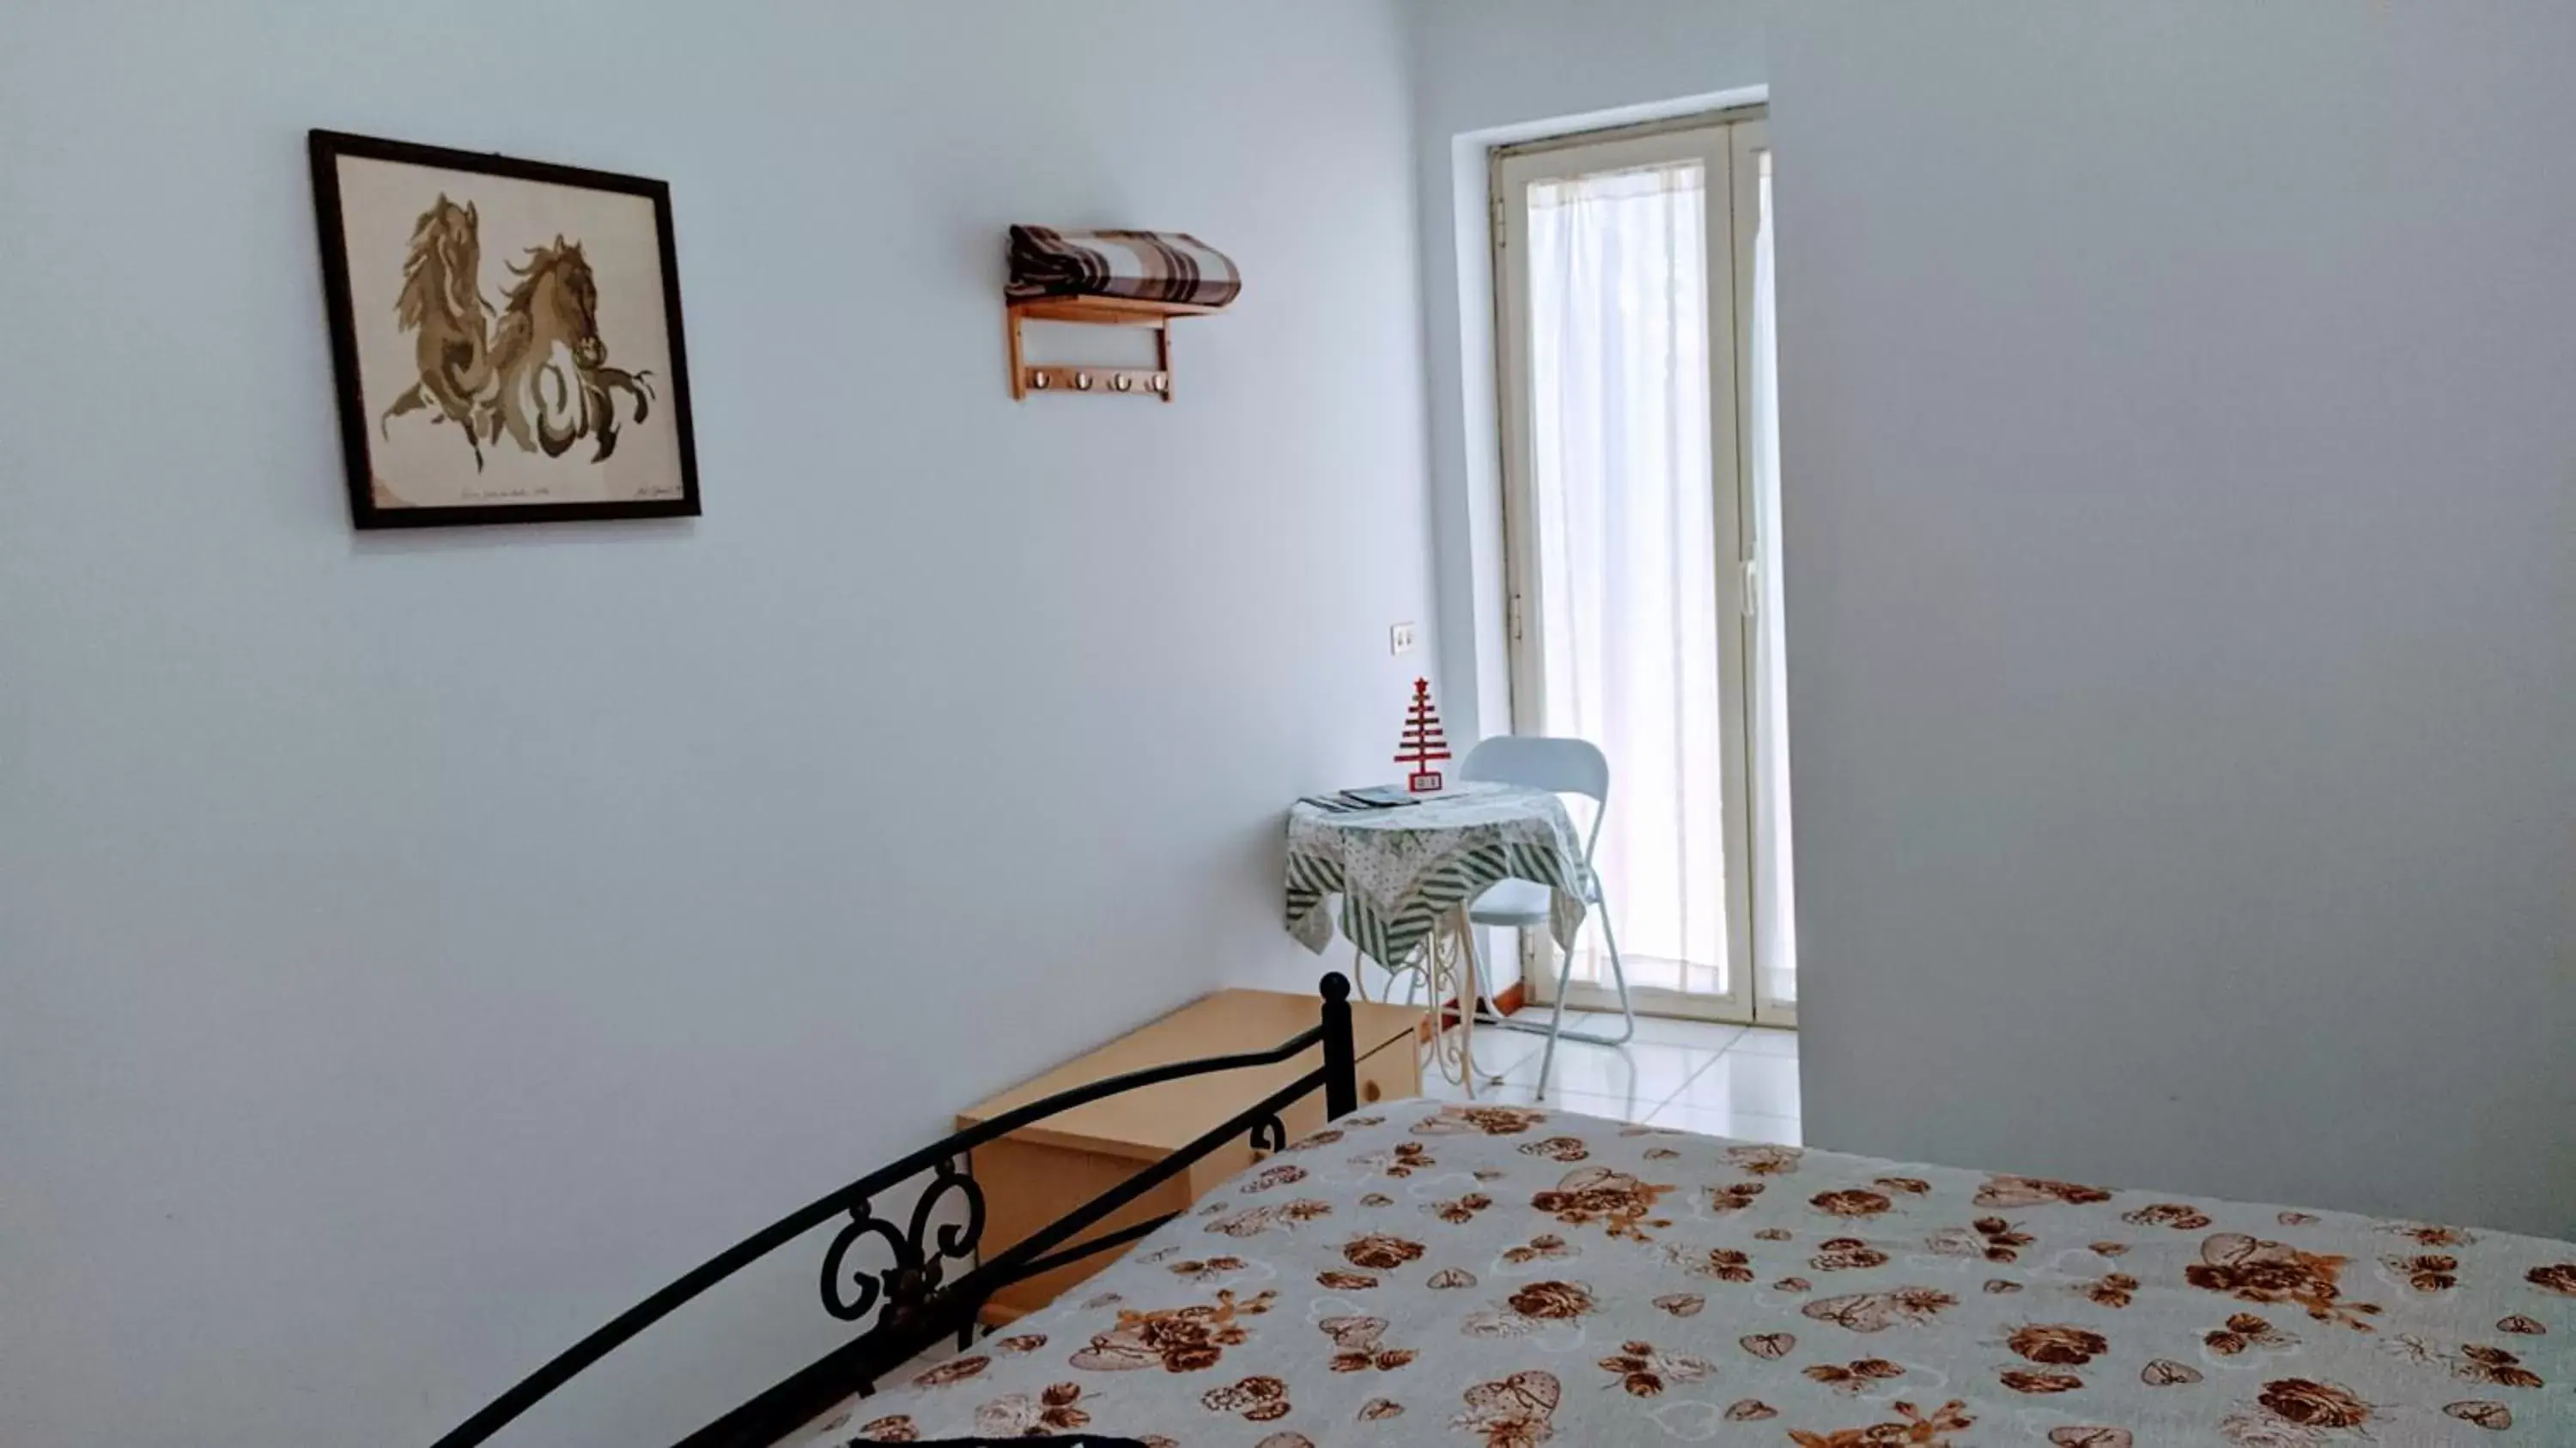 Bed in Peppino's Room Locazione turistica